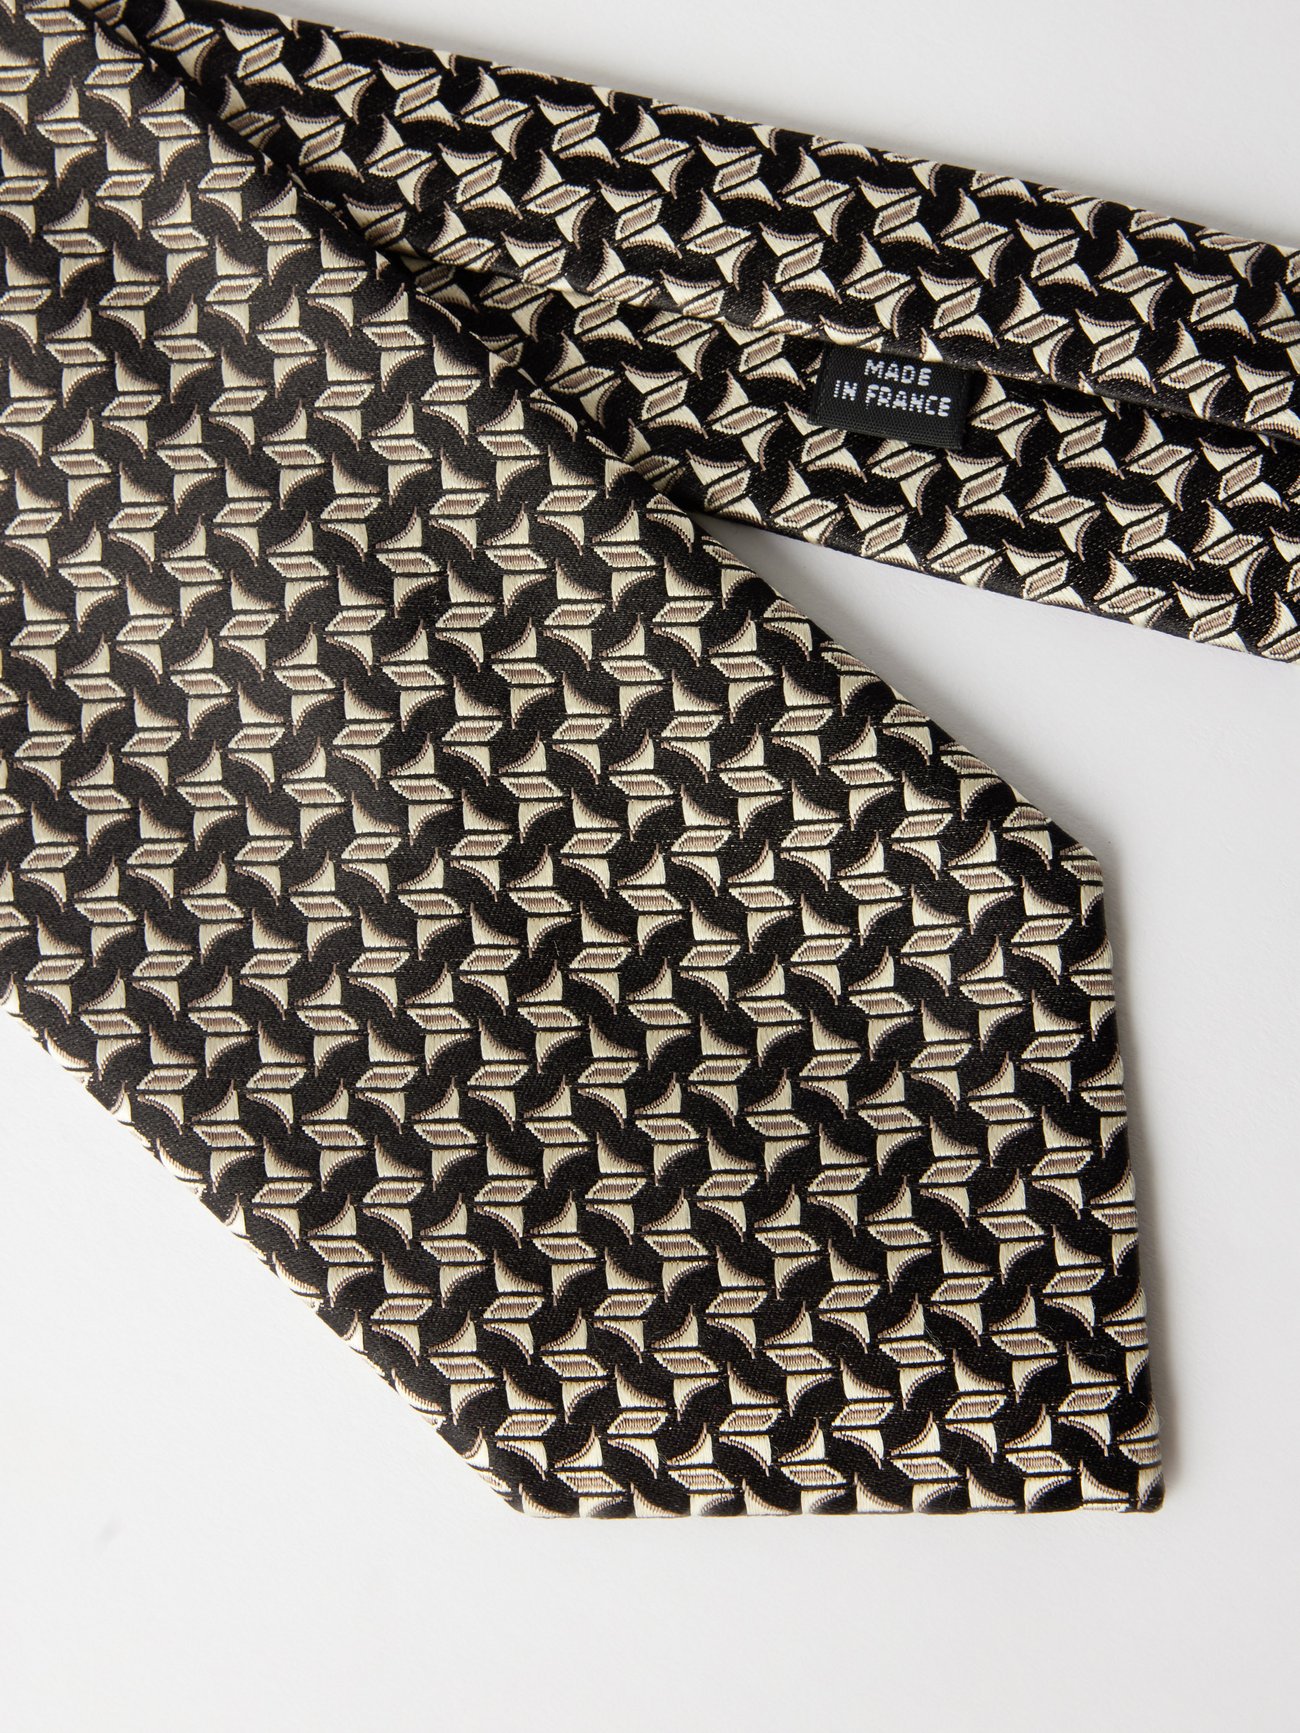 HommeGirls monogram-pattern Silk Tie - Black